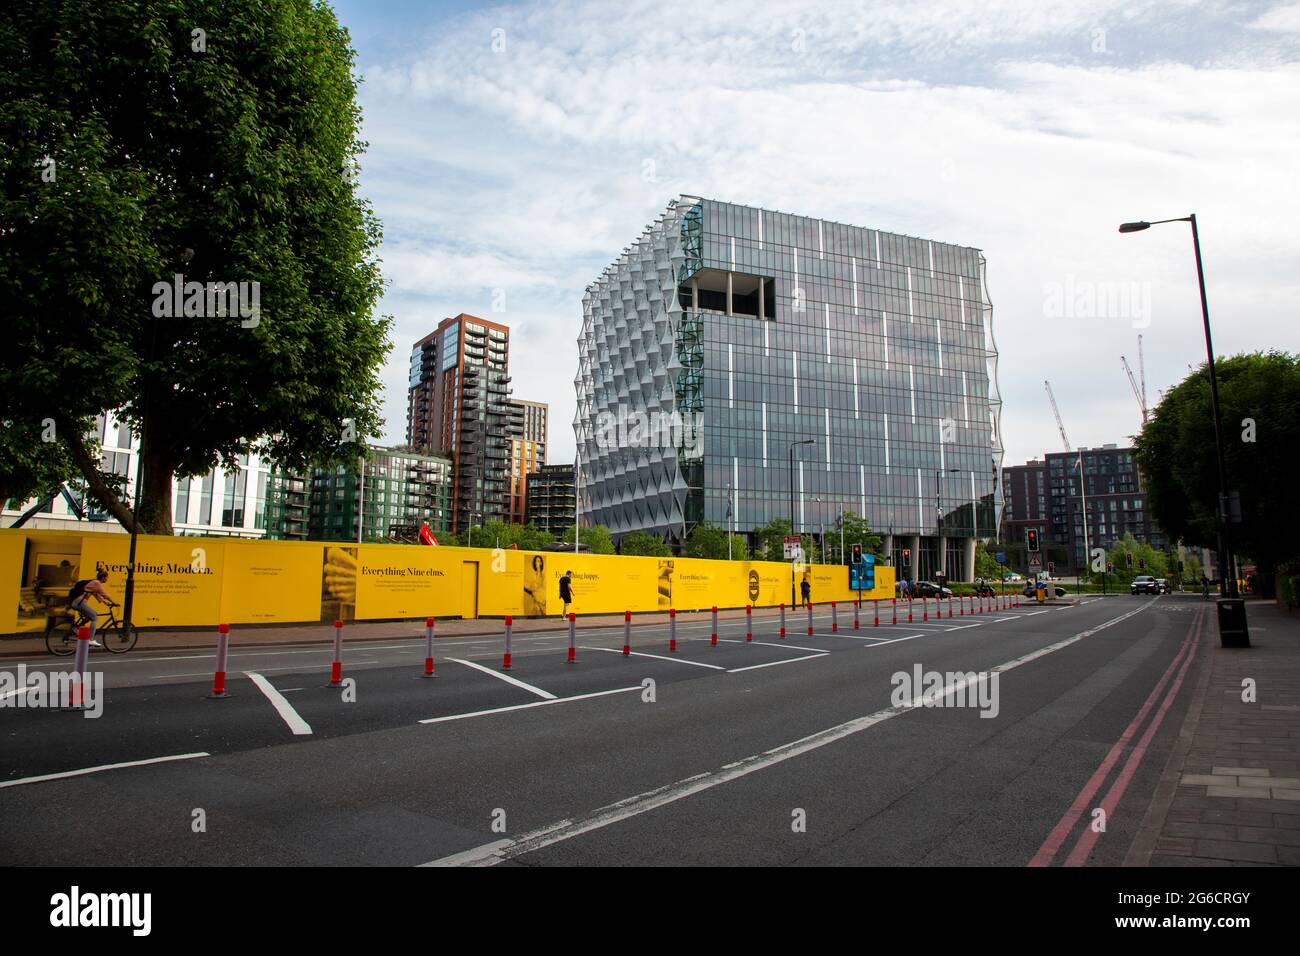 La nuova Ambasciata americana nel nuovo quartiere di sviluppo di Londra Nine Elms è stata progettata dagli architetti KieranTimberlake. Londra, Regno Unito. Foto Stock